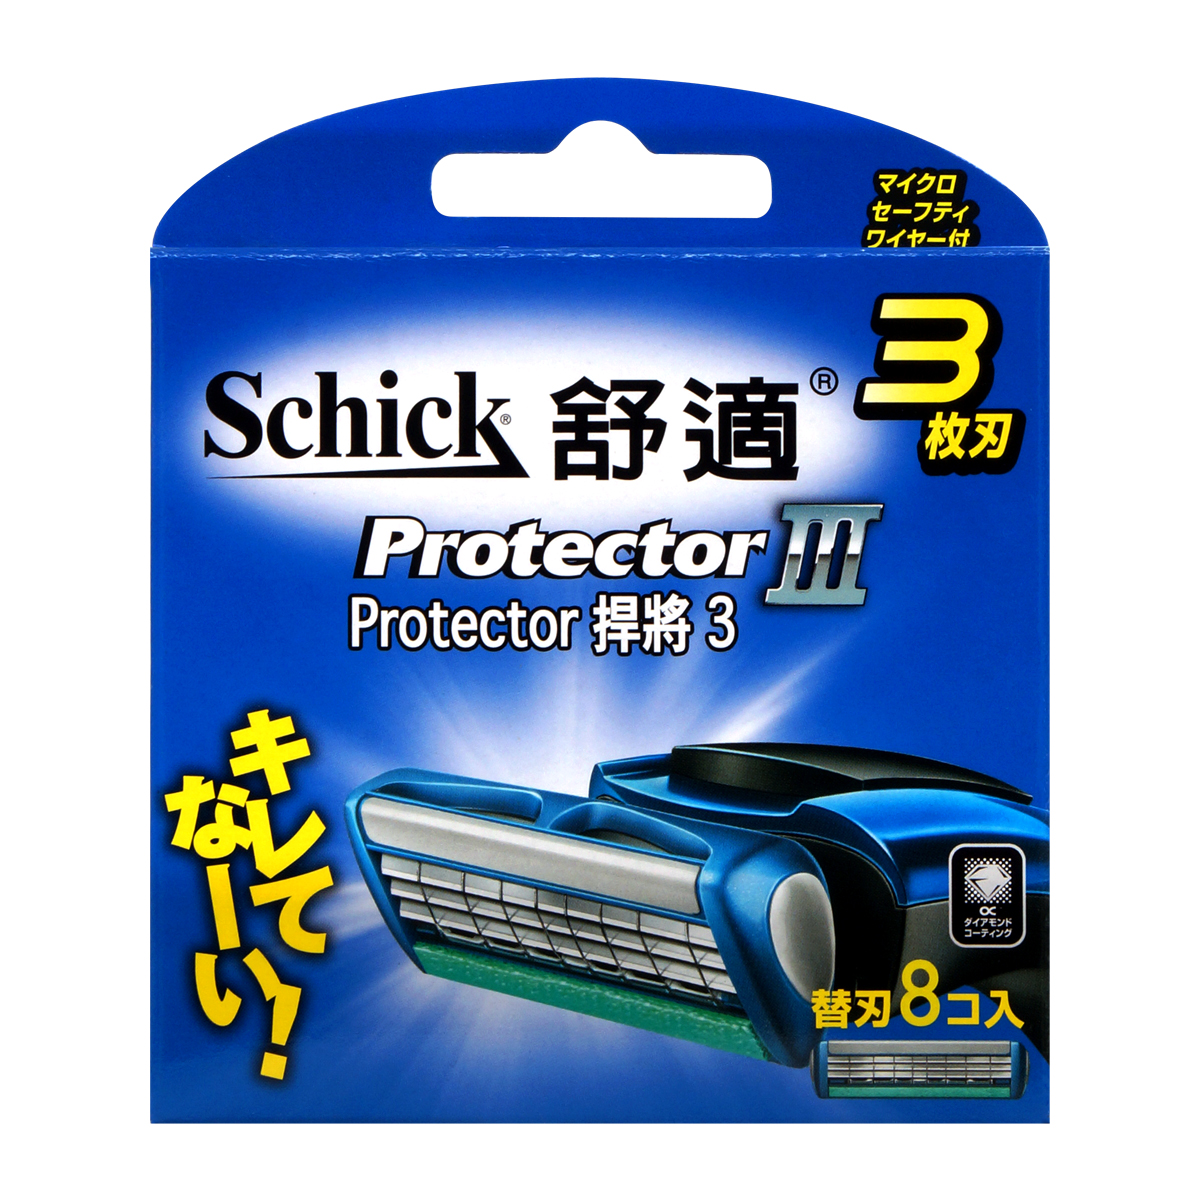 Schick 舒适 Protecter3 捍将 3  剃鬚刀补充刀片 8 片-p_2